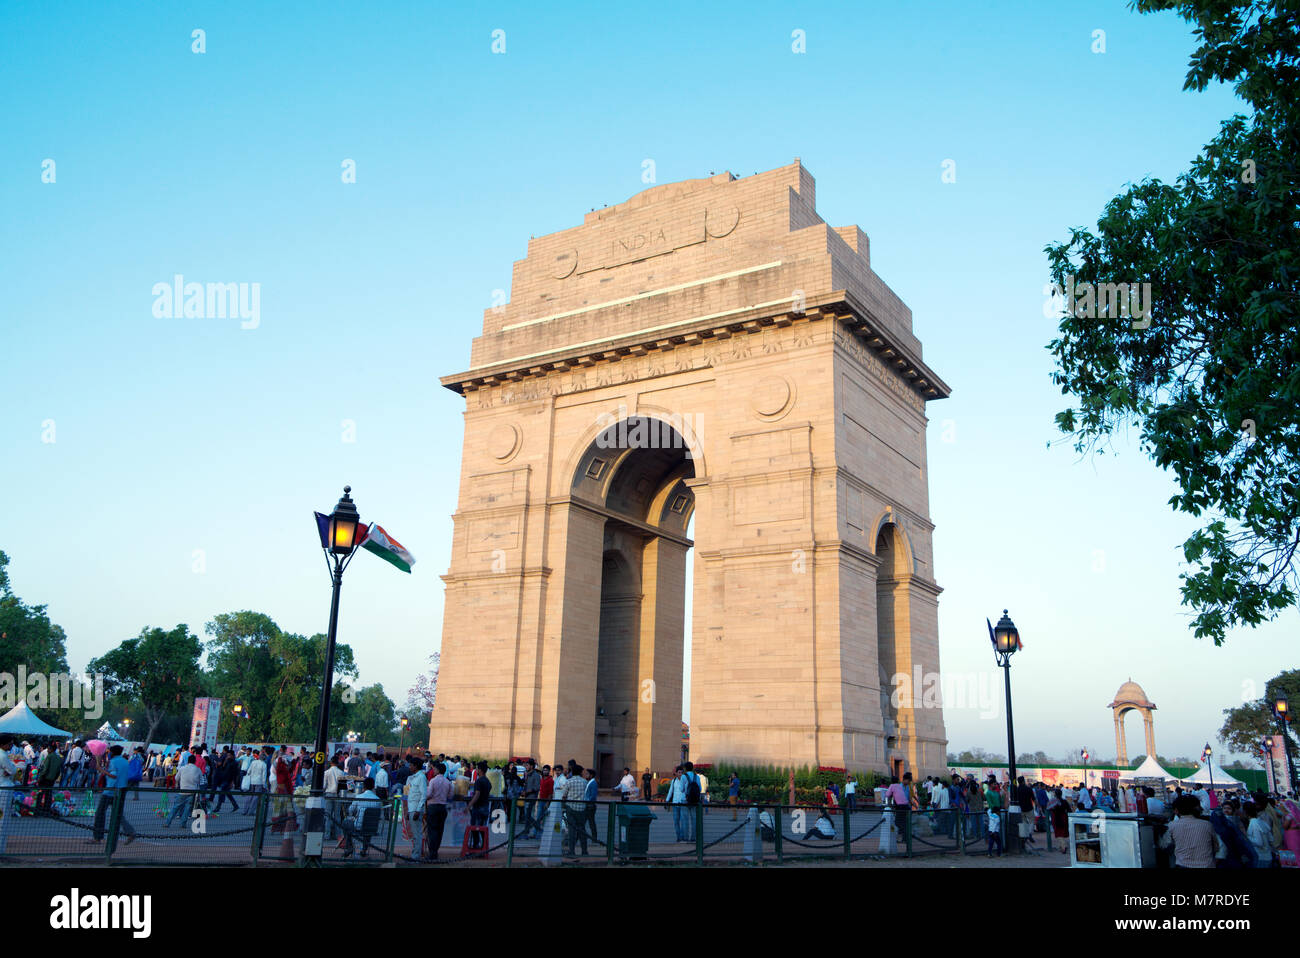 La porte de l'Inde, New Delhi Banque D'Images